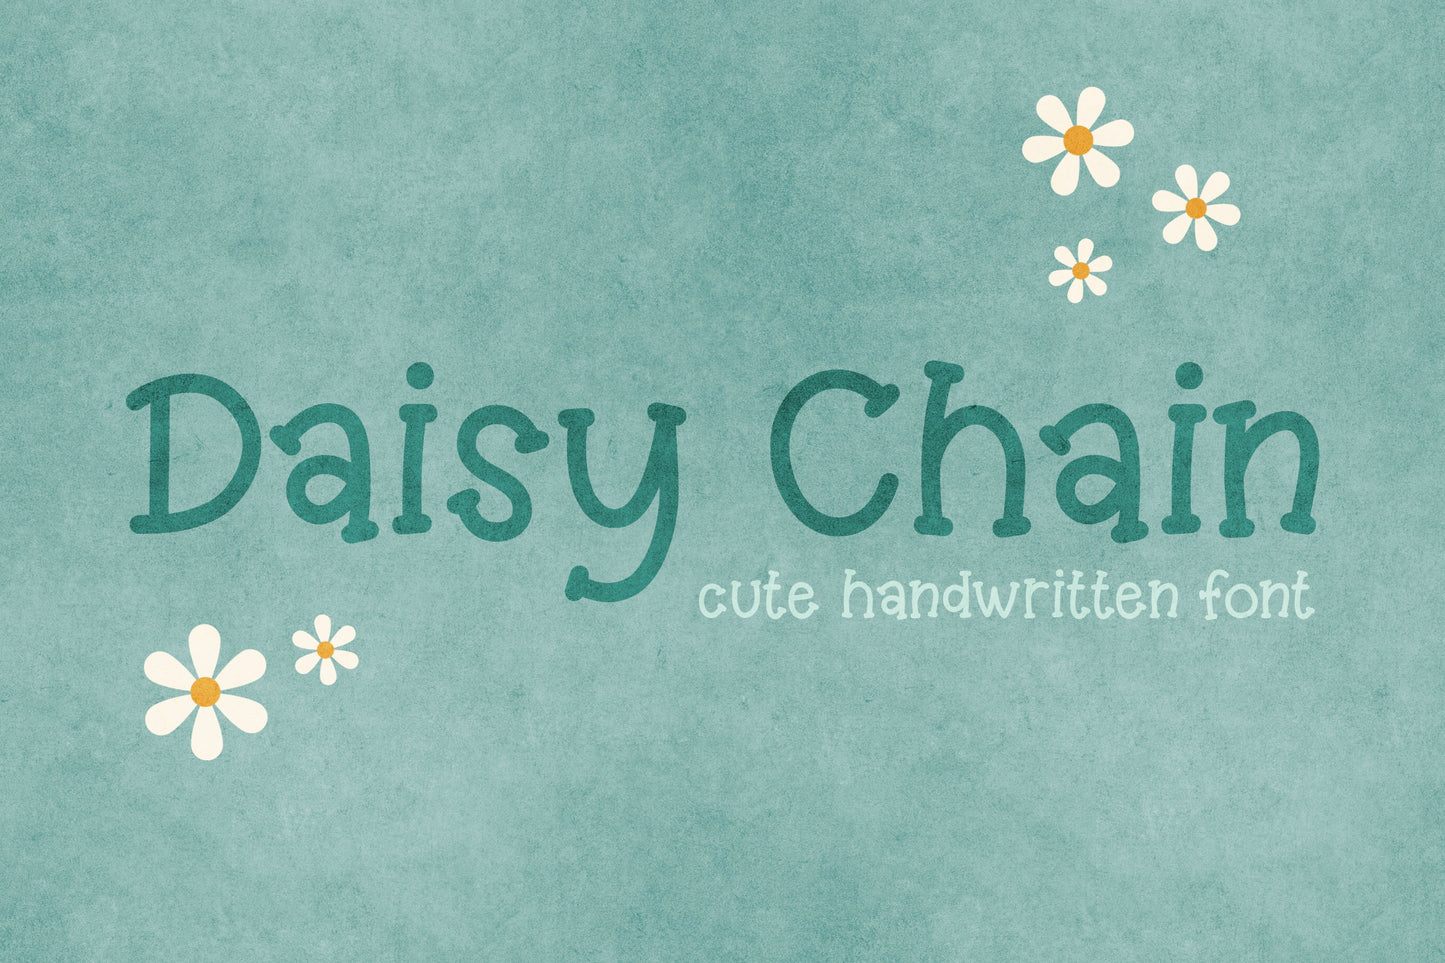 Daisy Chain Handwritten Font